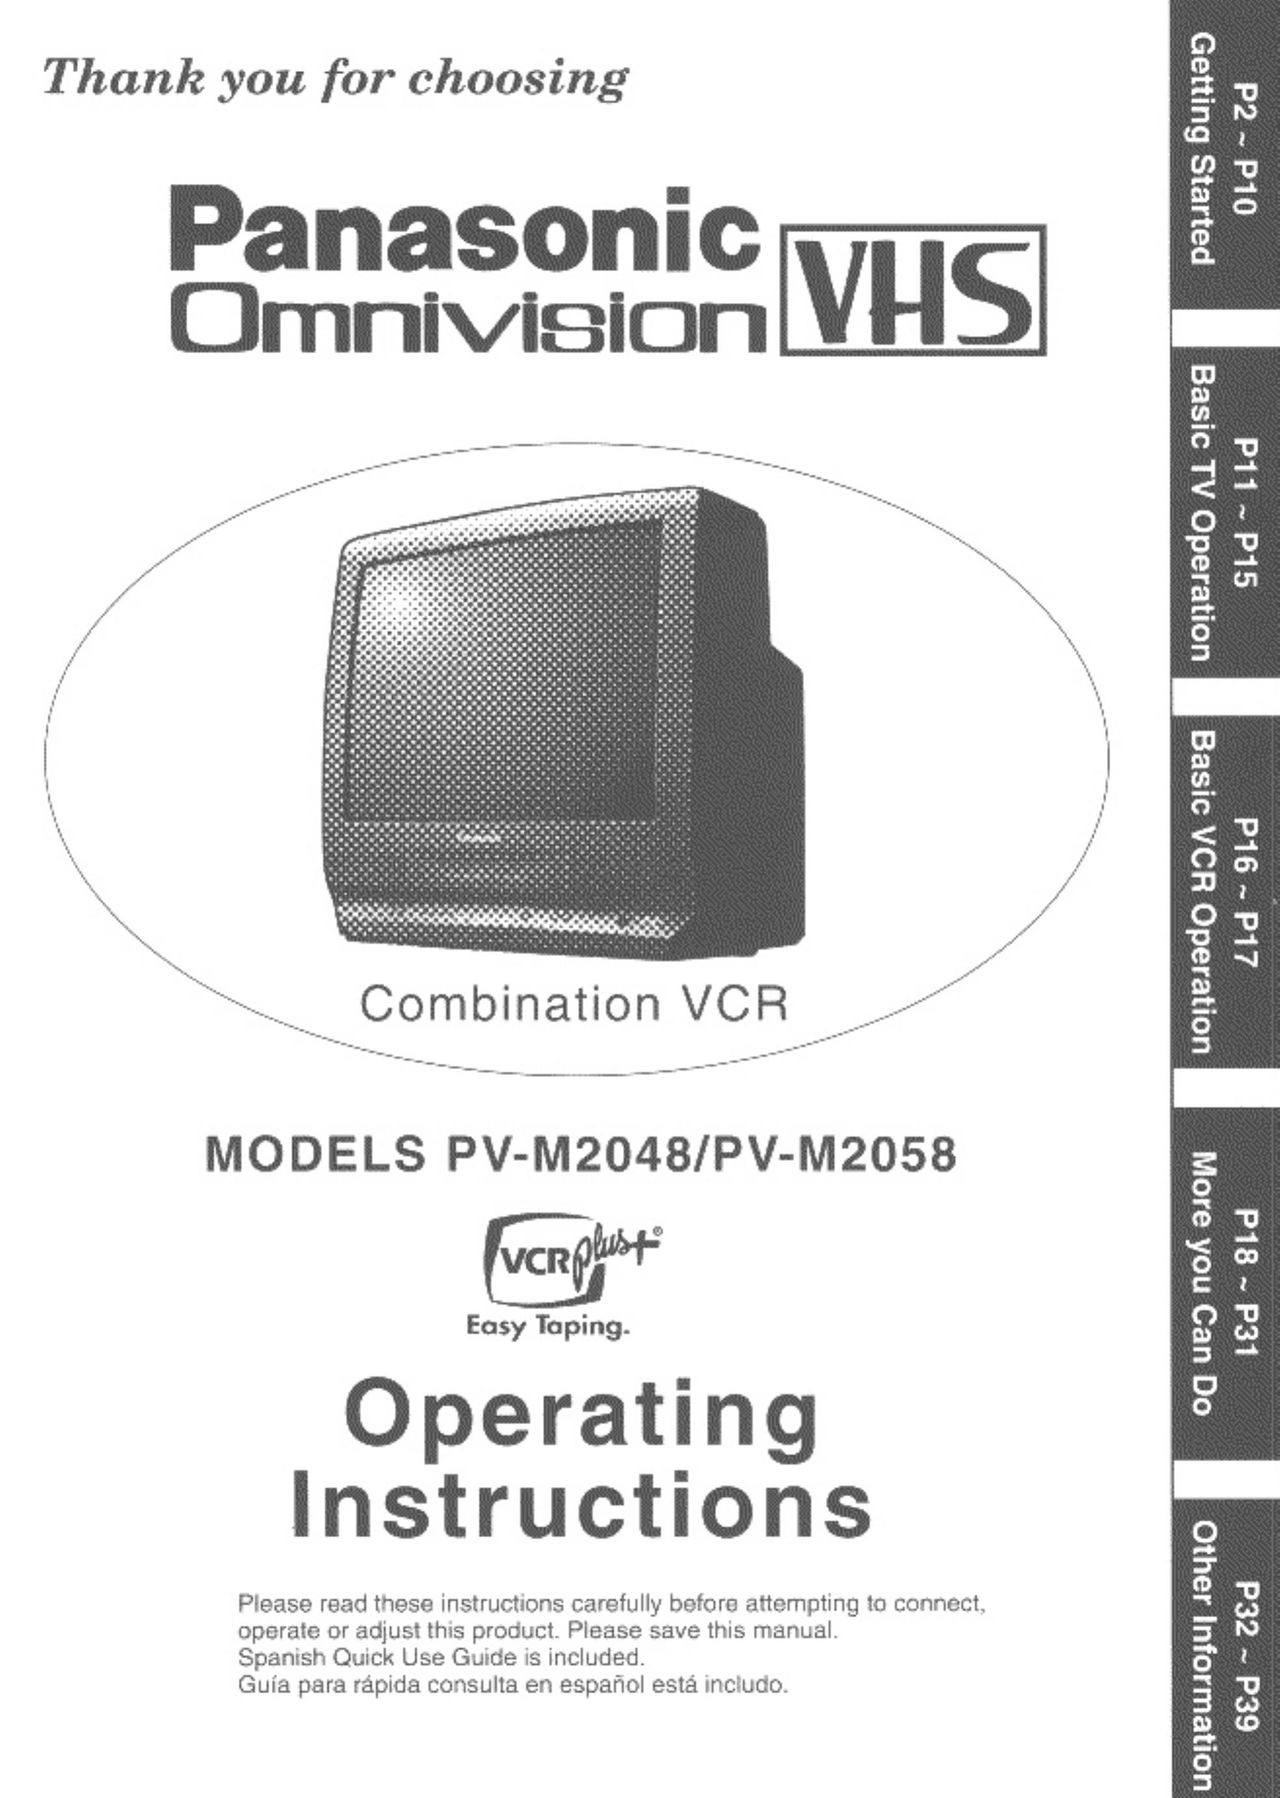 Panasonic PV-M2058 TV VCR Combo User Manual